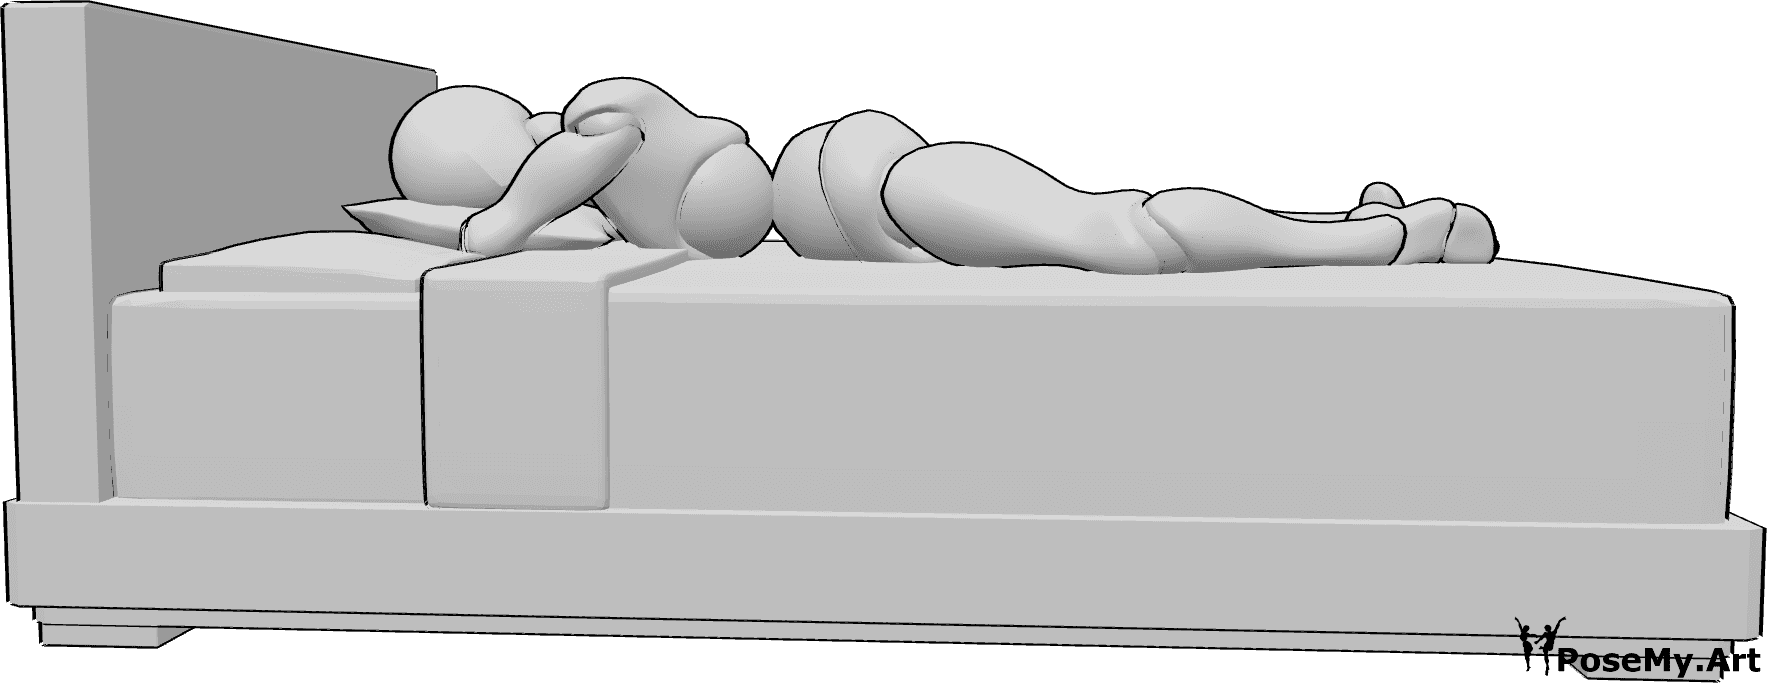 Riferimento alle pose- Posa femminile a letto - Donna sdraiata sul letto, a pancia in giù, con la testa appoggiata su un cuscino.